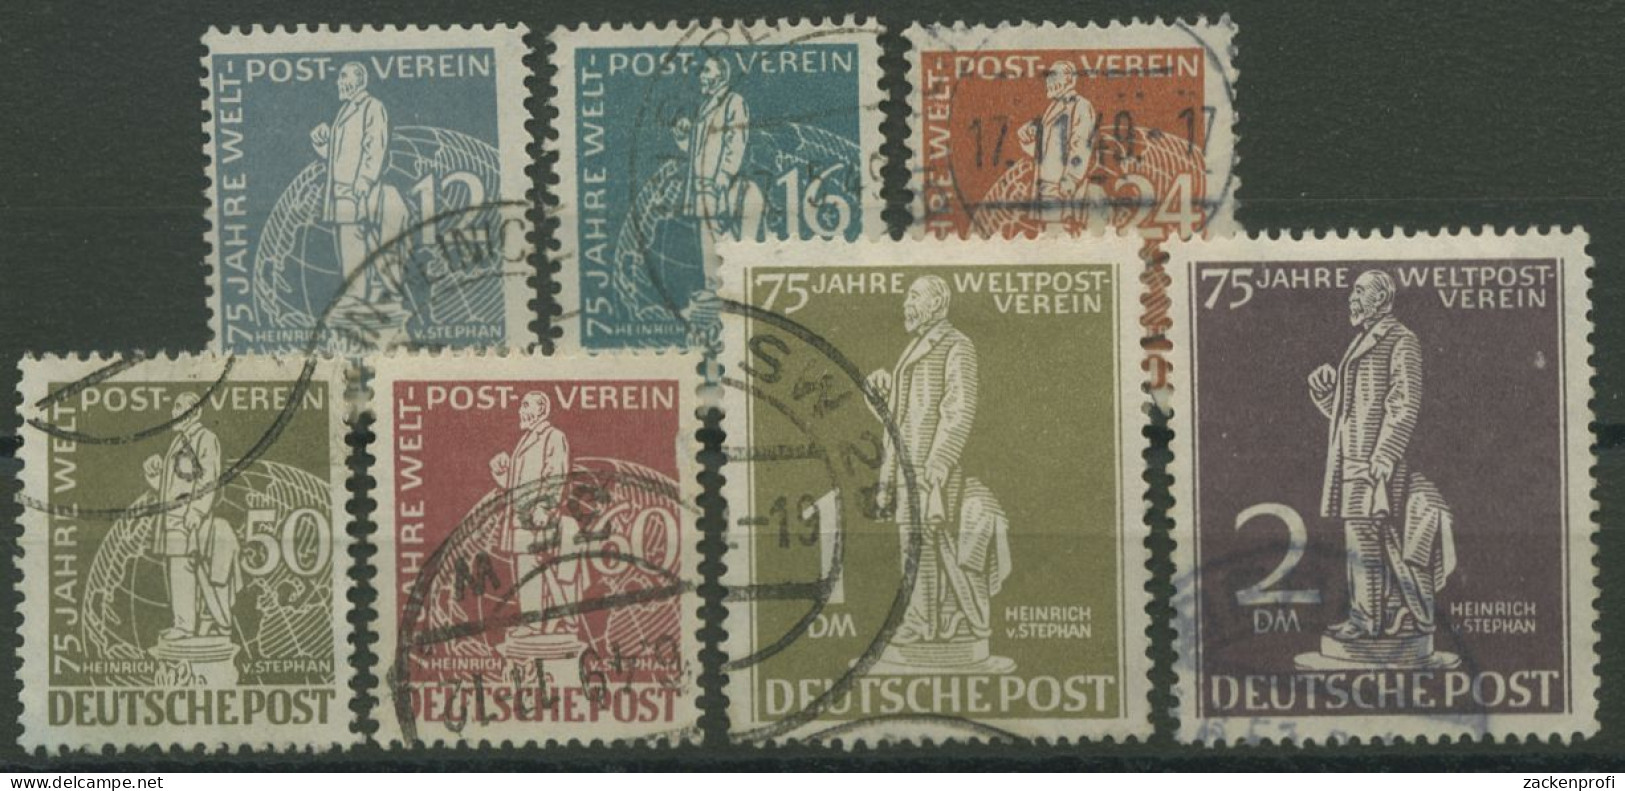 Berlin 1949 H. V. Stephan, Weltpostverein UPU 35/41 Gestempelt (R80797) - Gebraucht